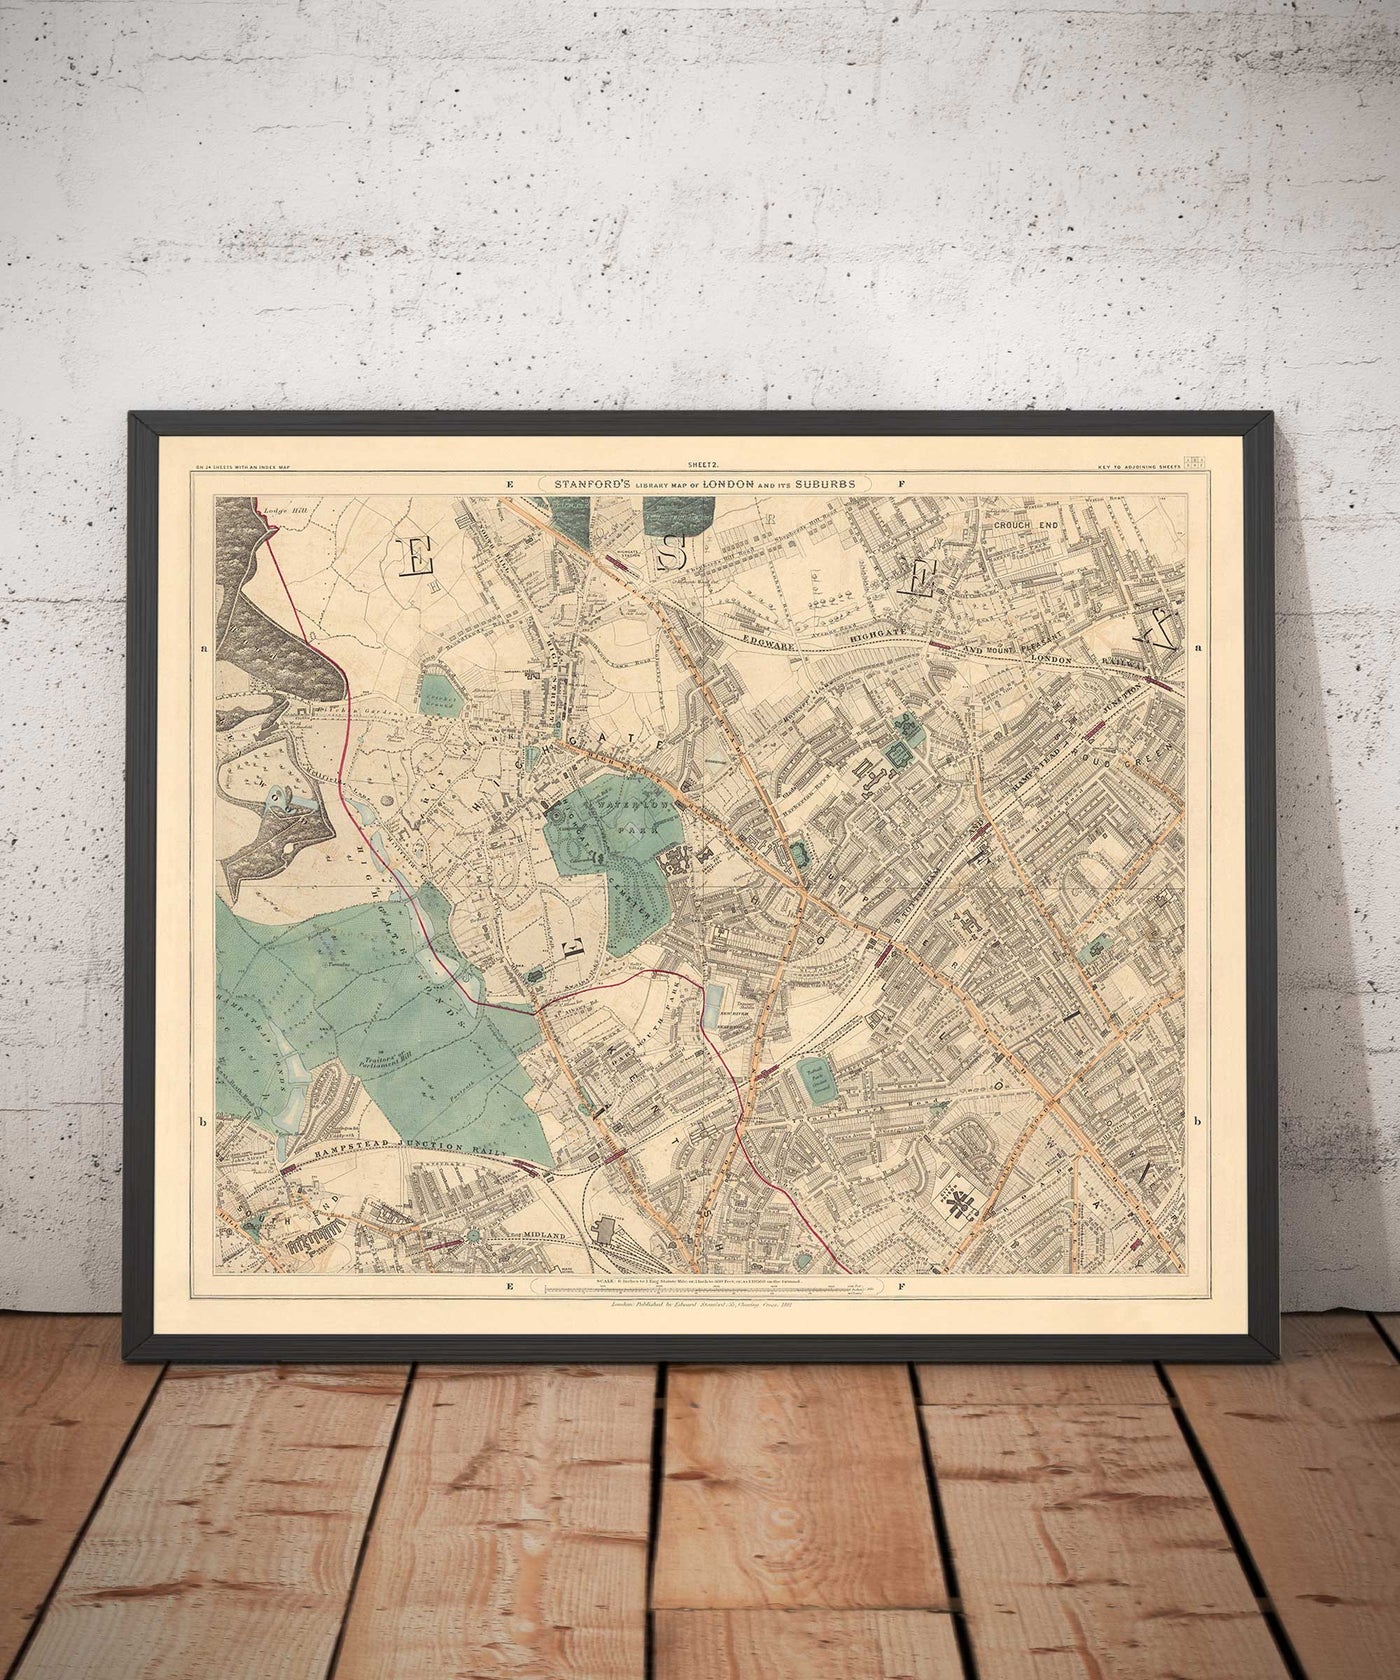 Antiguo mapa en color del norte de Londres en 1891 - Highgate, Hampstead Heath, Holloway, Crouch End - N6, N8, N19, N7, NW3 NW5